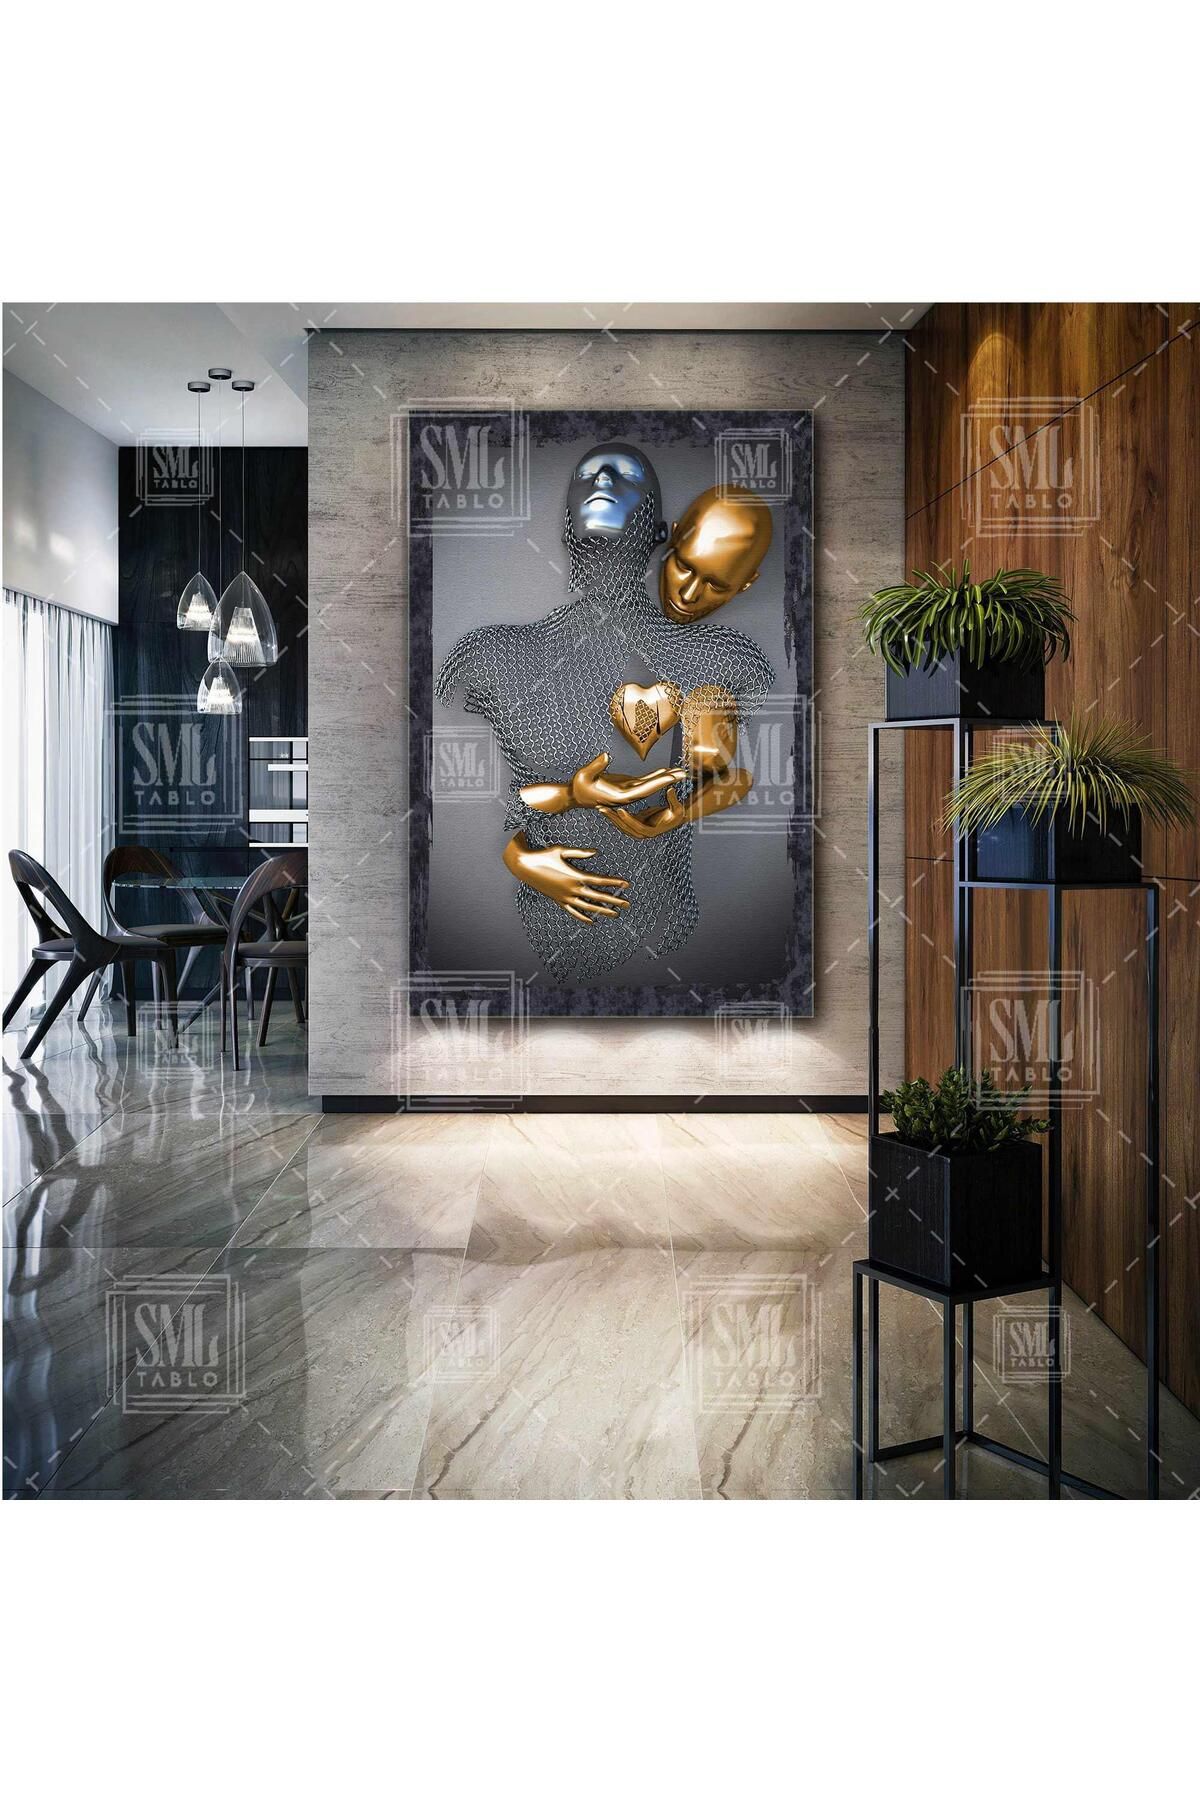 SML TABLO Eli Kalbinde Sarılan Metal Aşıklar Sarılan Çift Gri Gold Dekorasyon Dikey Kanvas Tablo